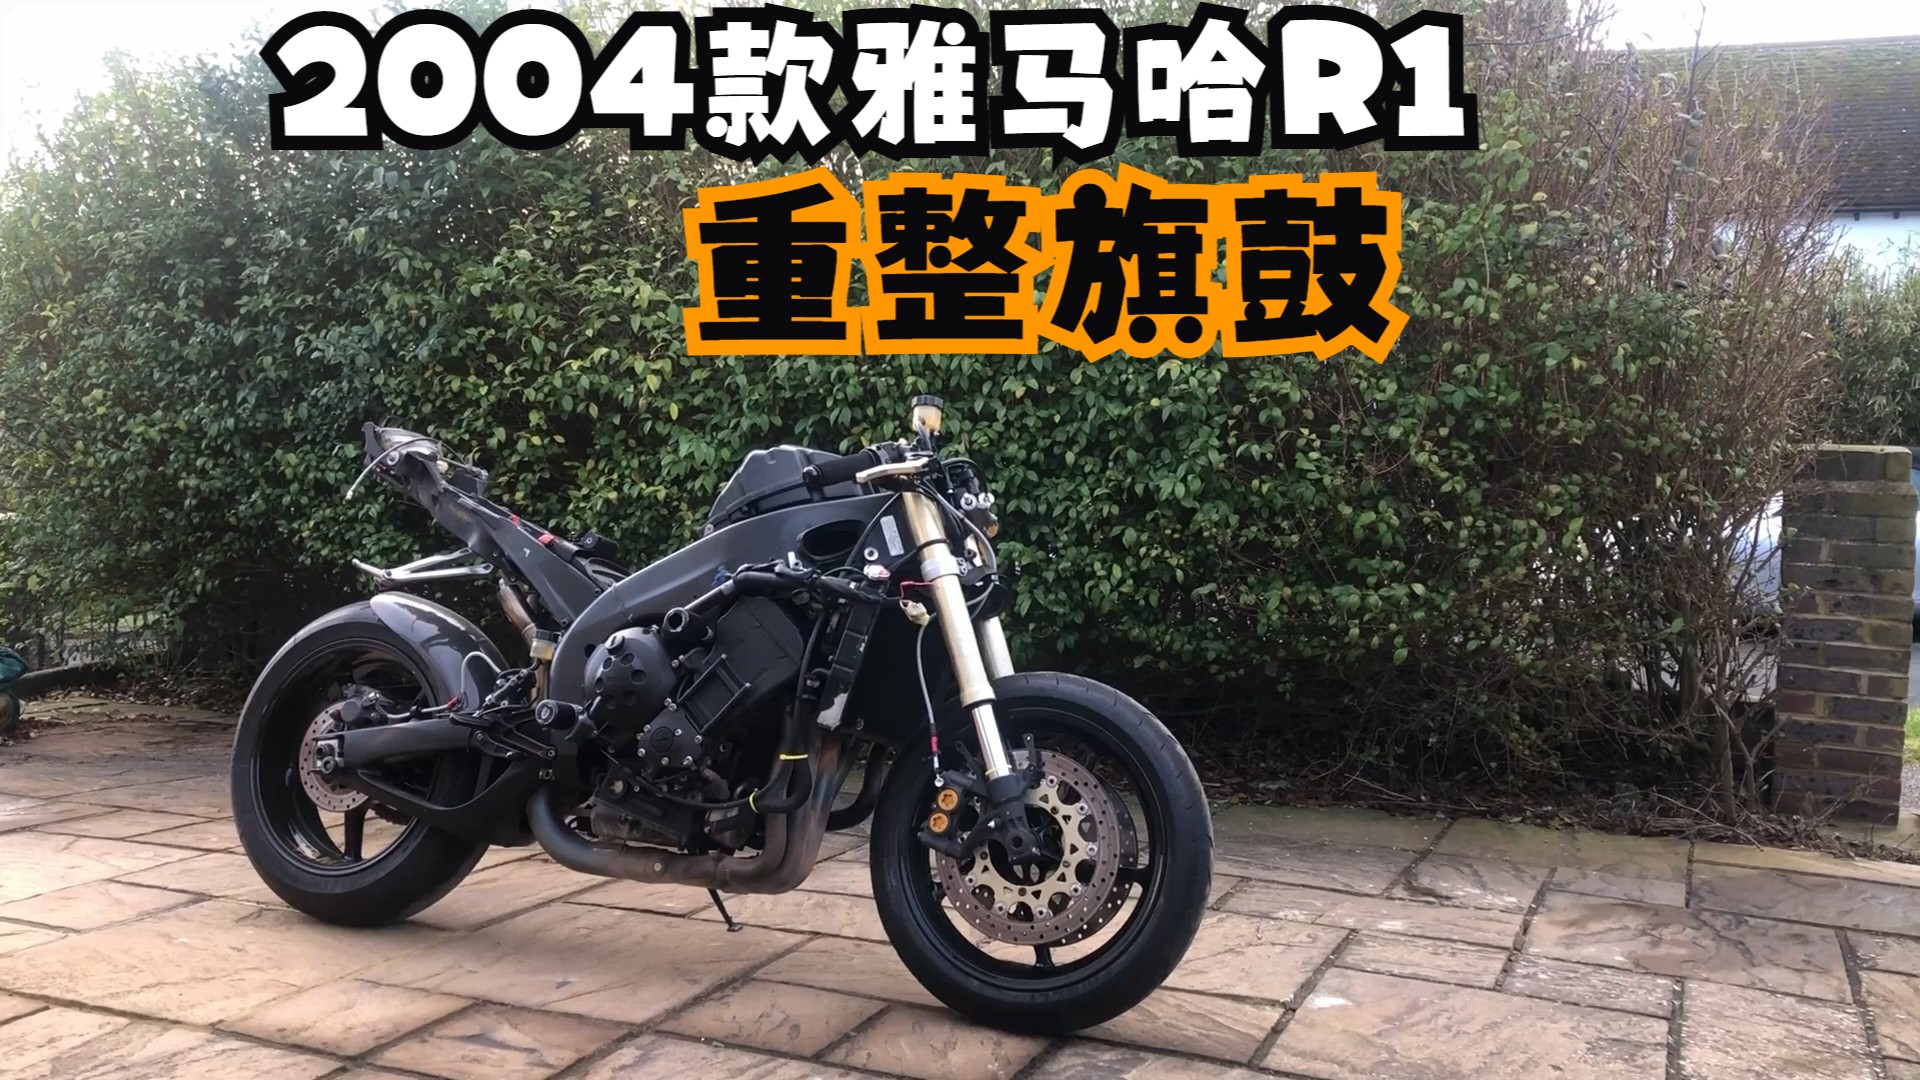 【01_2004款雅马哈R1翻新历程1/7】Rebuilding a Yamaha R1  (Part 1)